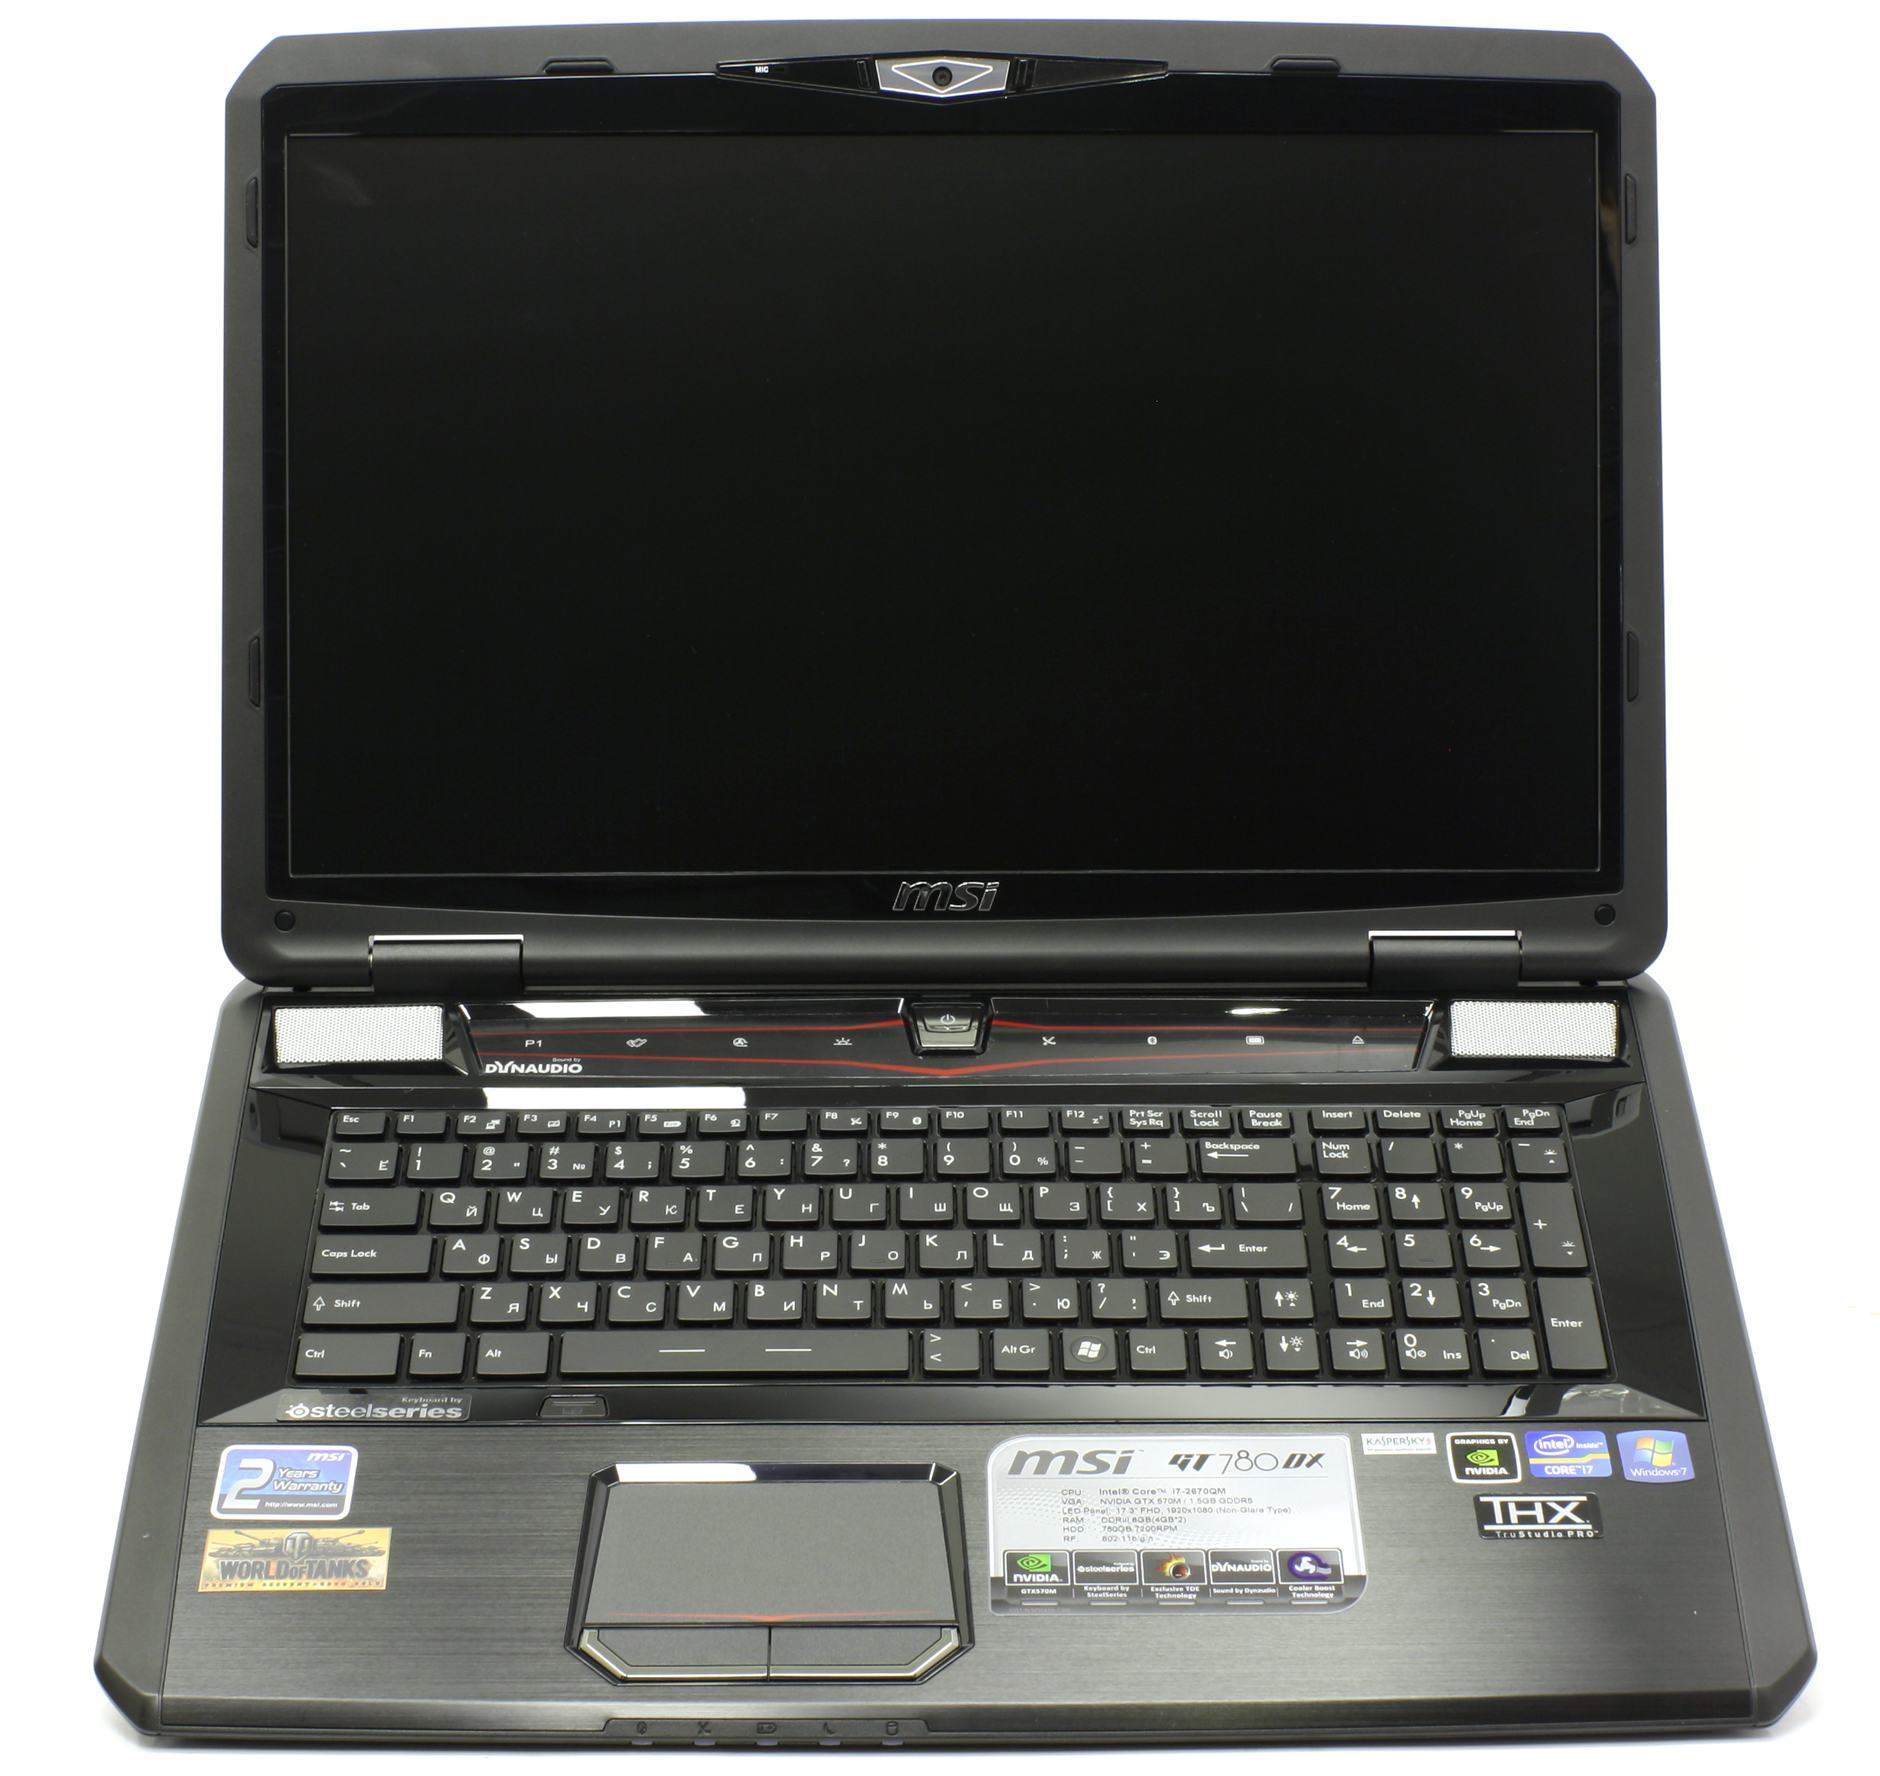 Цена Ноутбука Msi Gt780dx